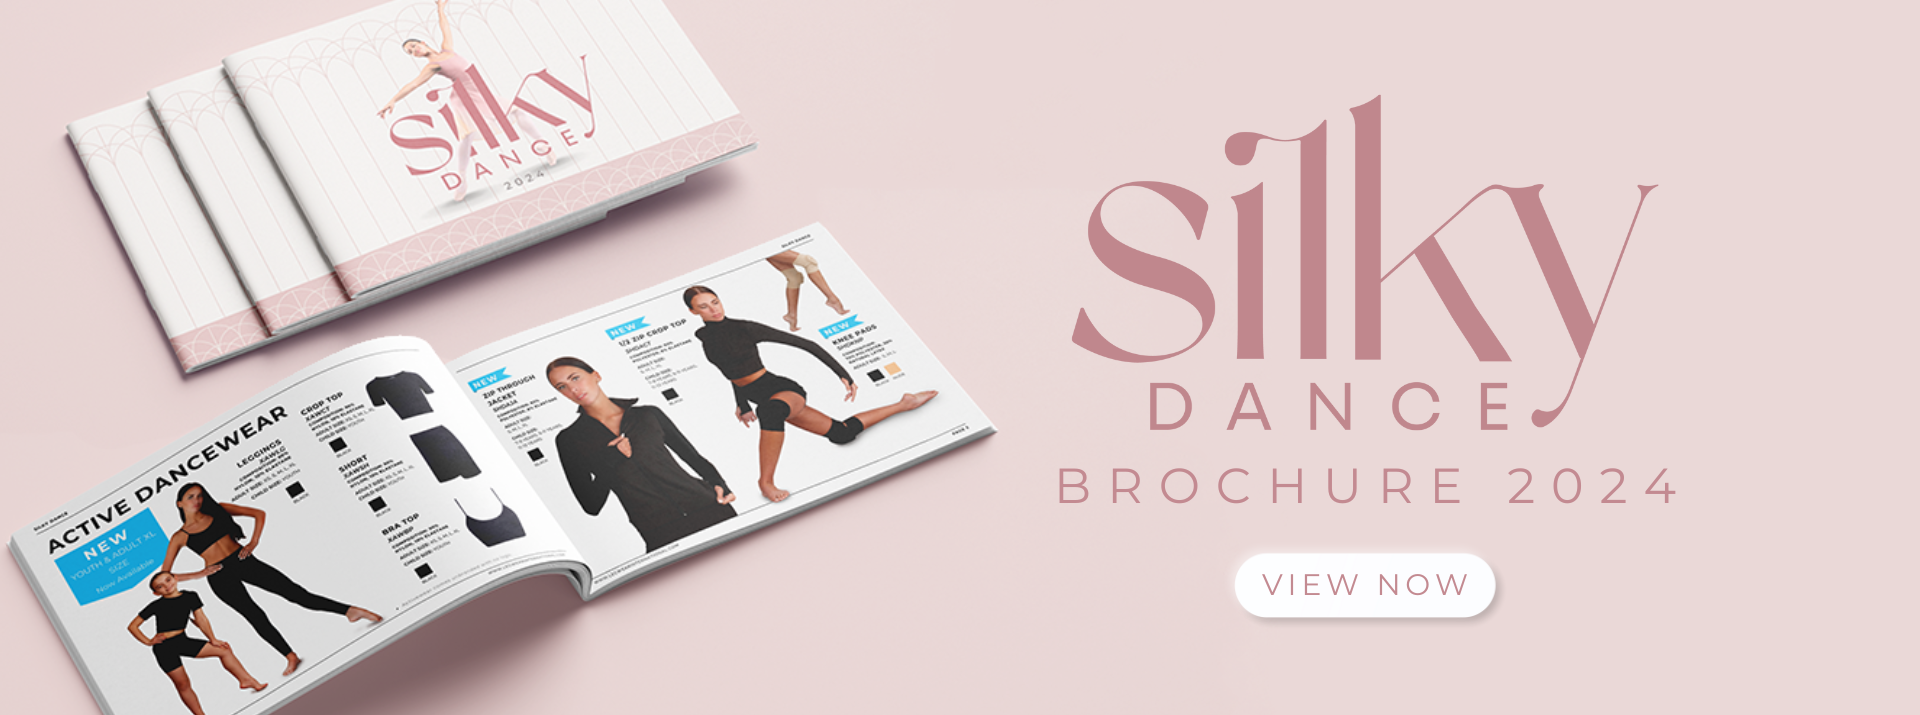 Silky Dance Brochure 2024